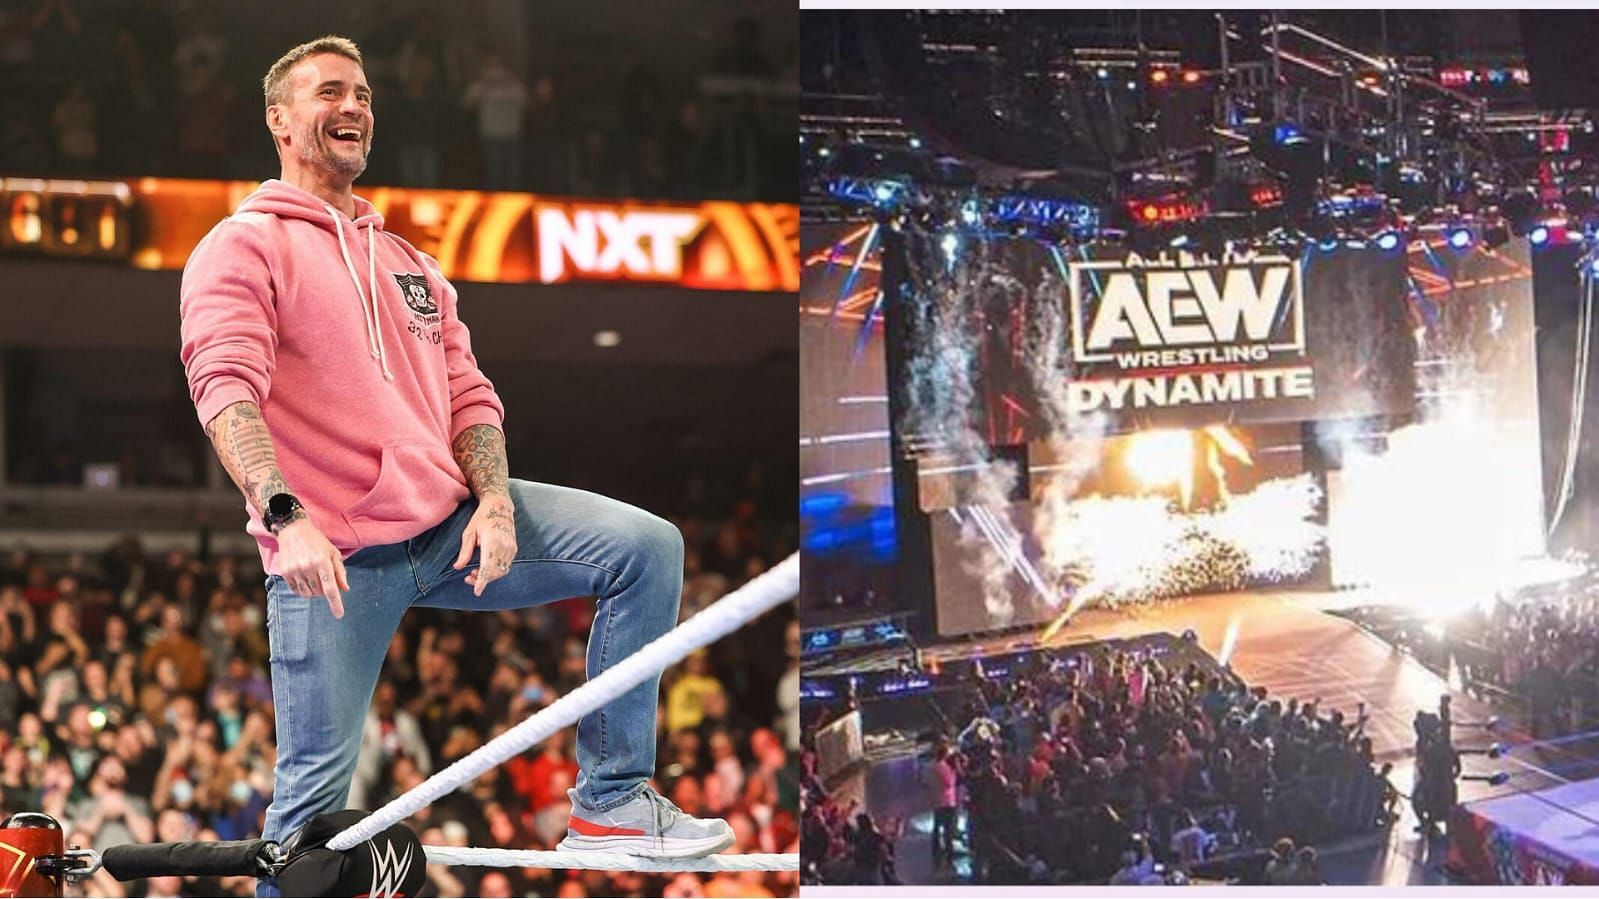 CM Punk is a former AEW World Champion